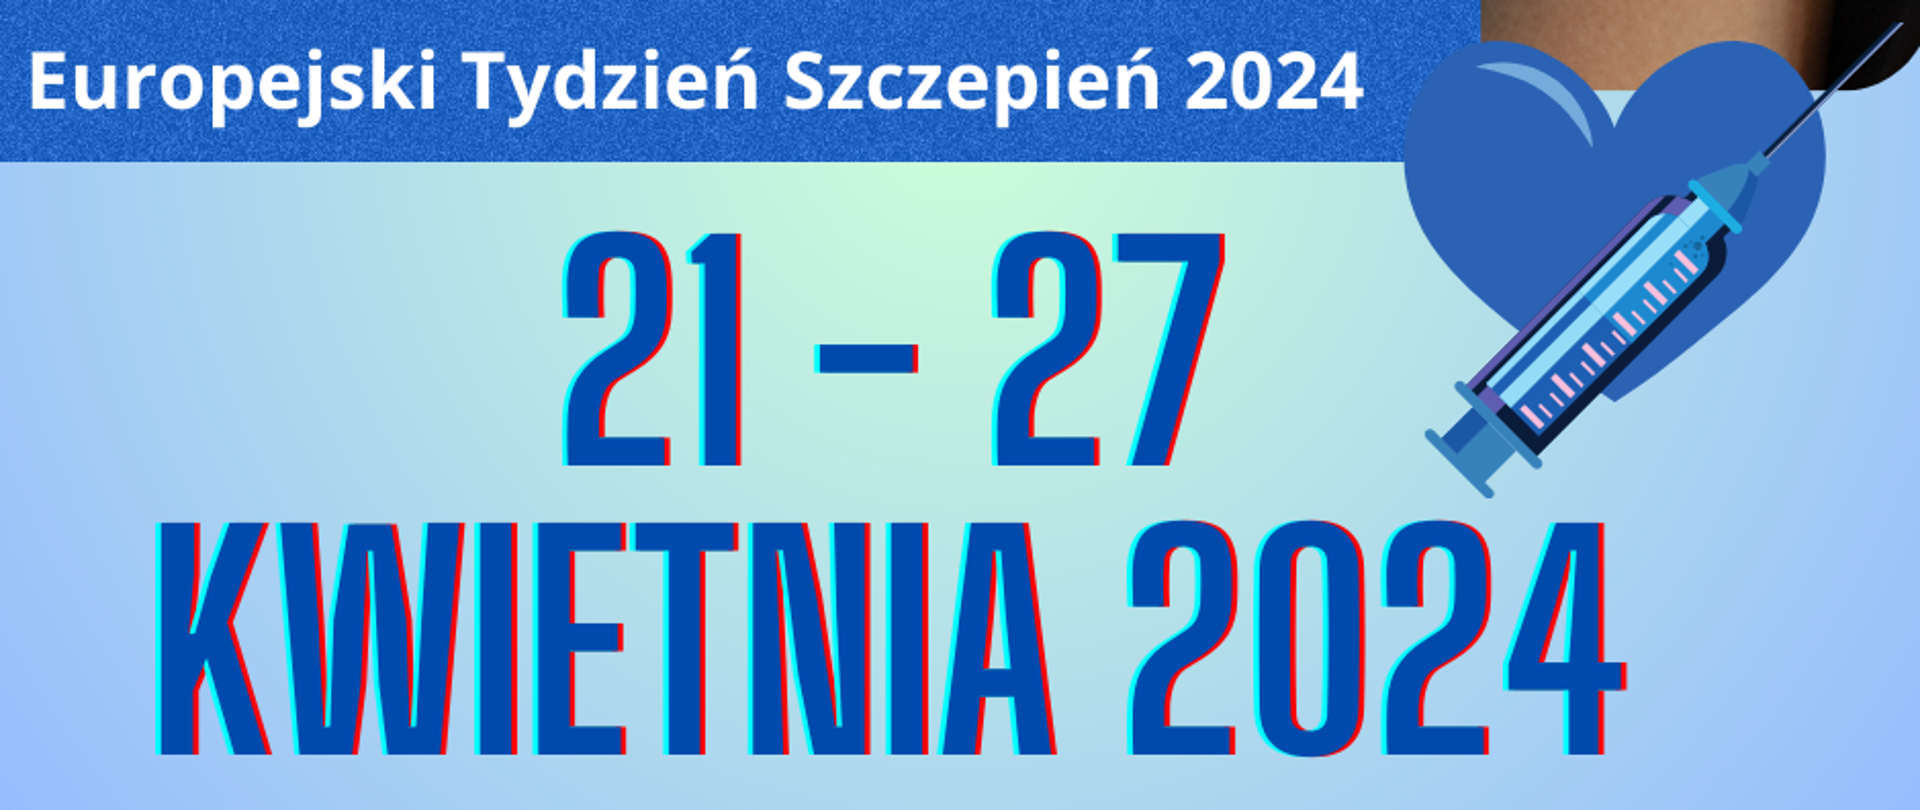 Europejski Tydzień Szczepień 2024